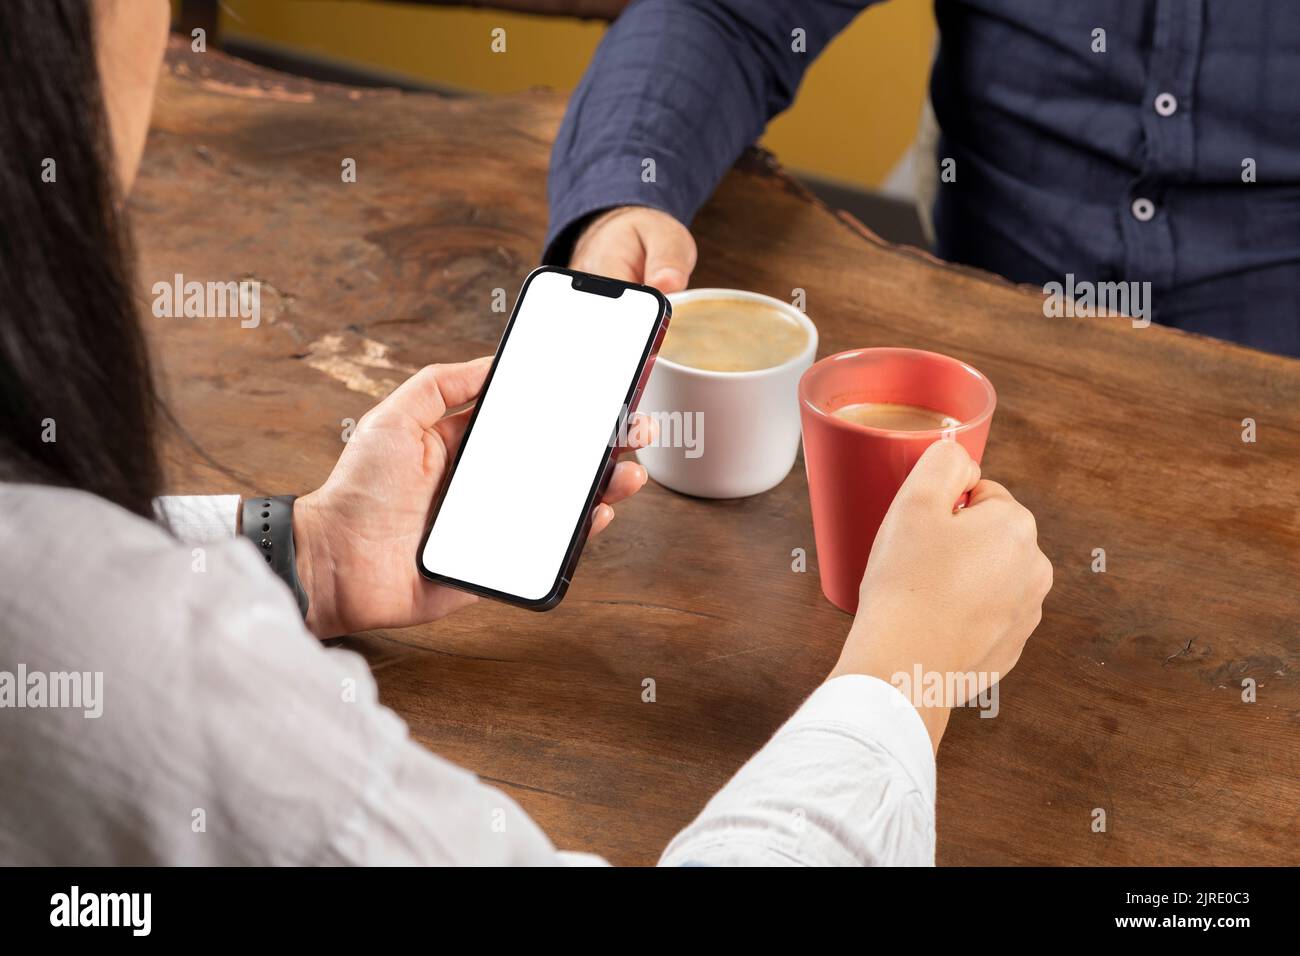 Smartphone halten, Frau auf dem Holztisch sitzen und Smartphone halten. Paar Dating im Café, junge Frau ignoriert Mann. Weißer Bildschirm. Stockfoto